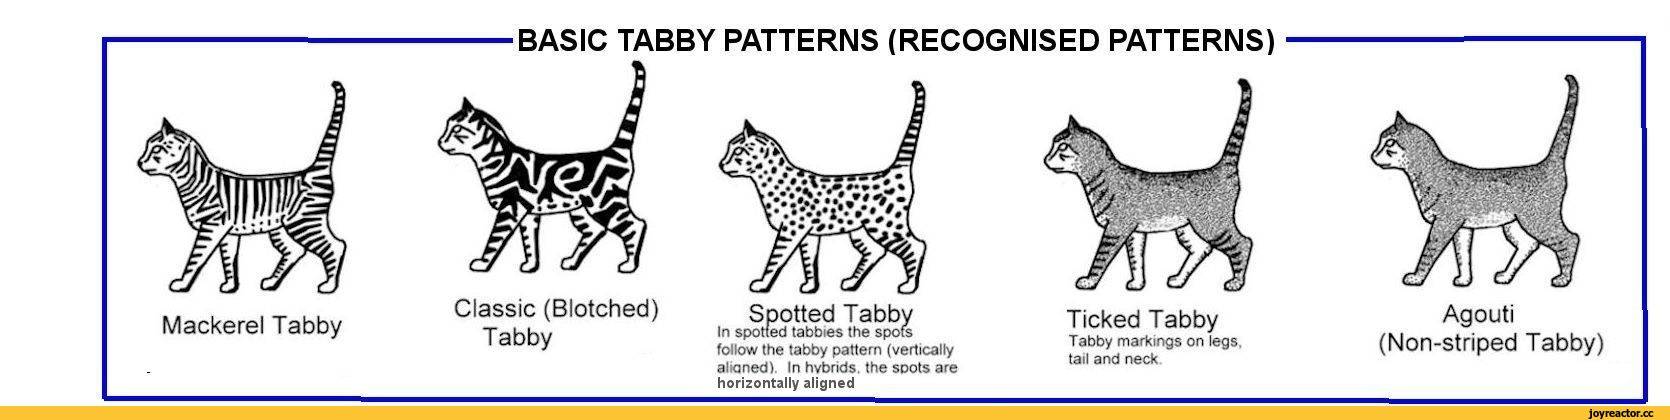 Окрас табби: виды, стандарты и особенности, породы кошек с описанием, фото